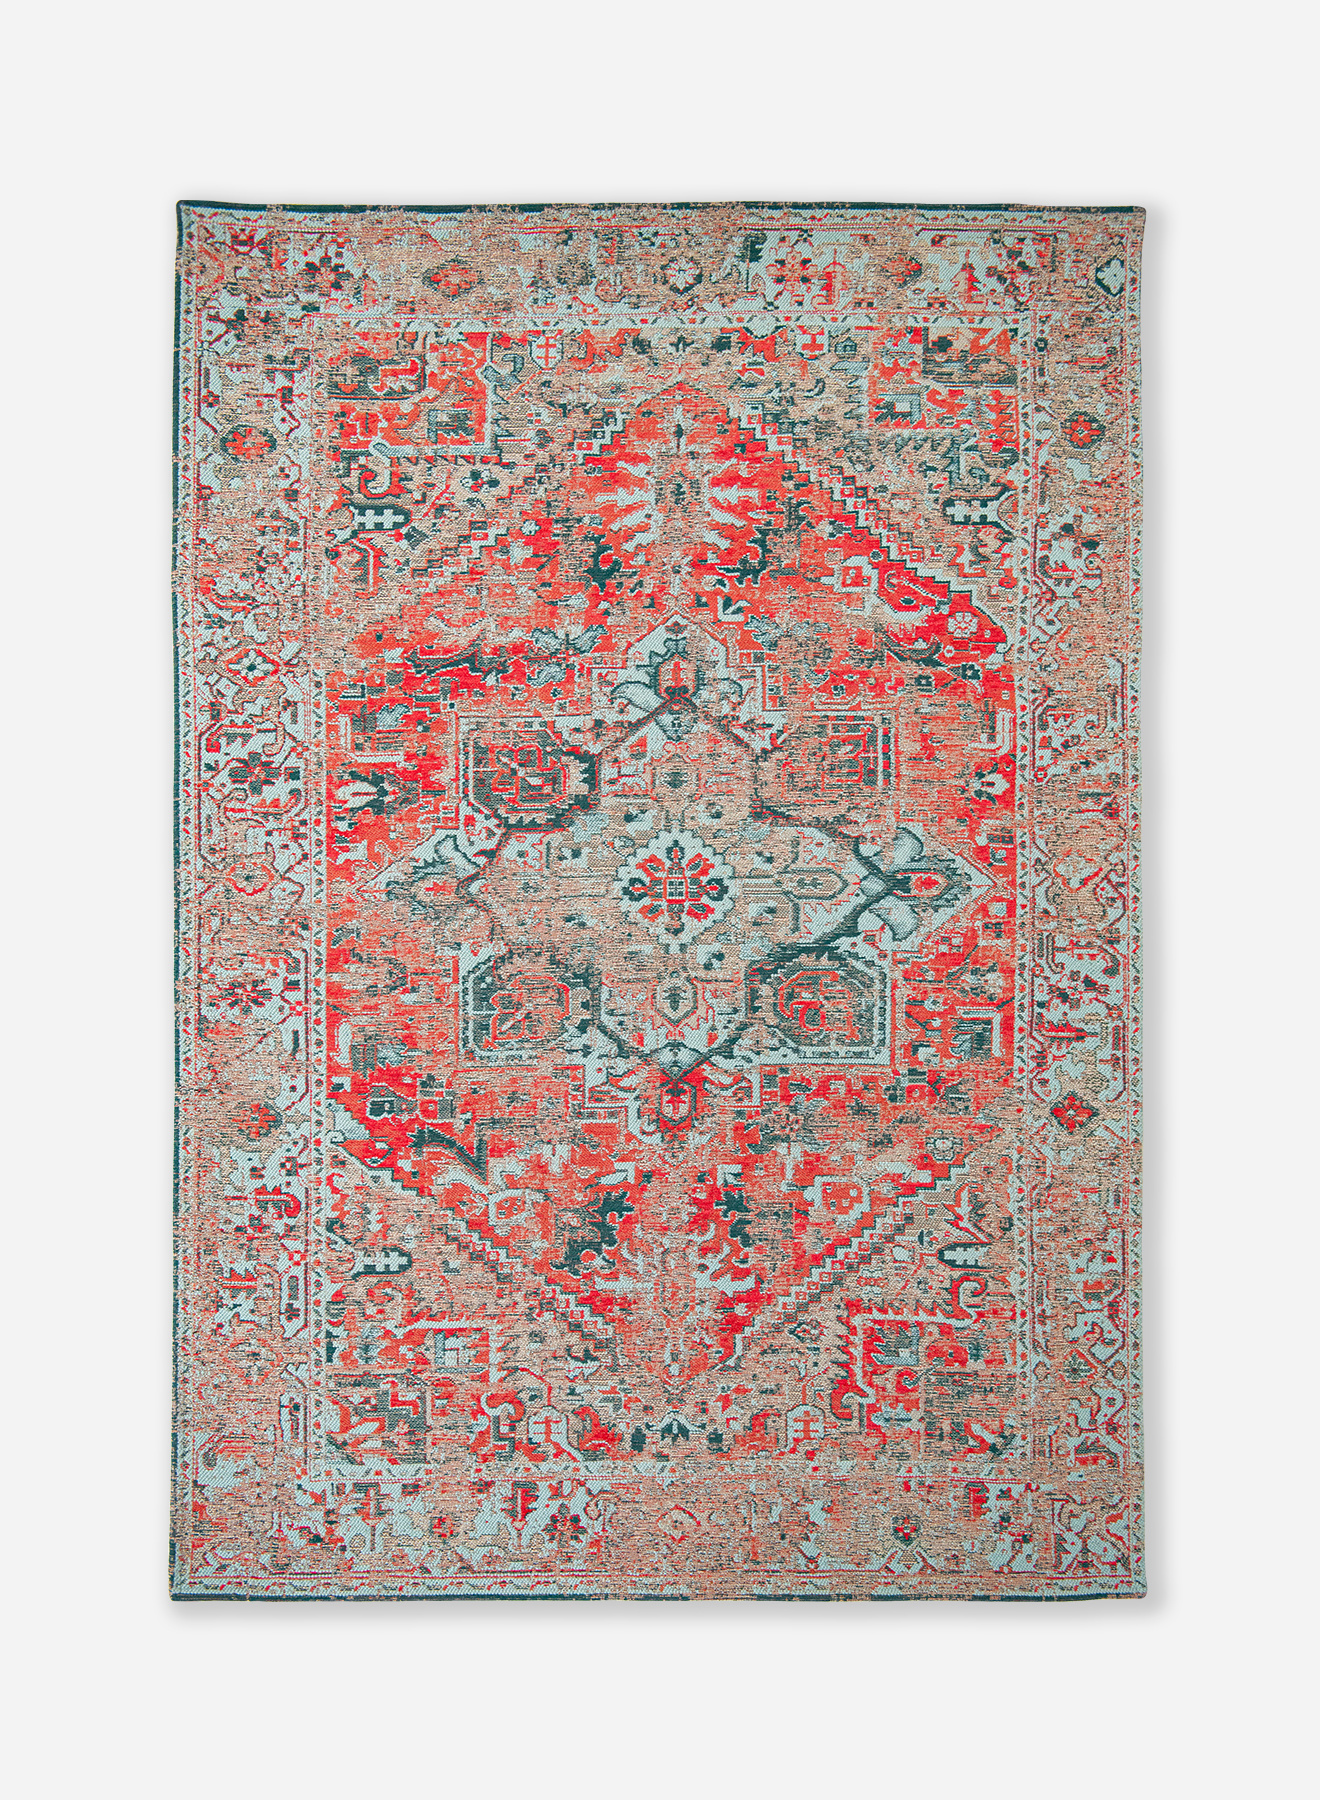 JEP oogsten handicap Antique Heriz tapijt uit de Antiquarian Collectie - Blood Turquoise 9298 -  Louis De Poortere Store